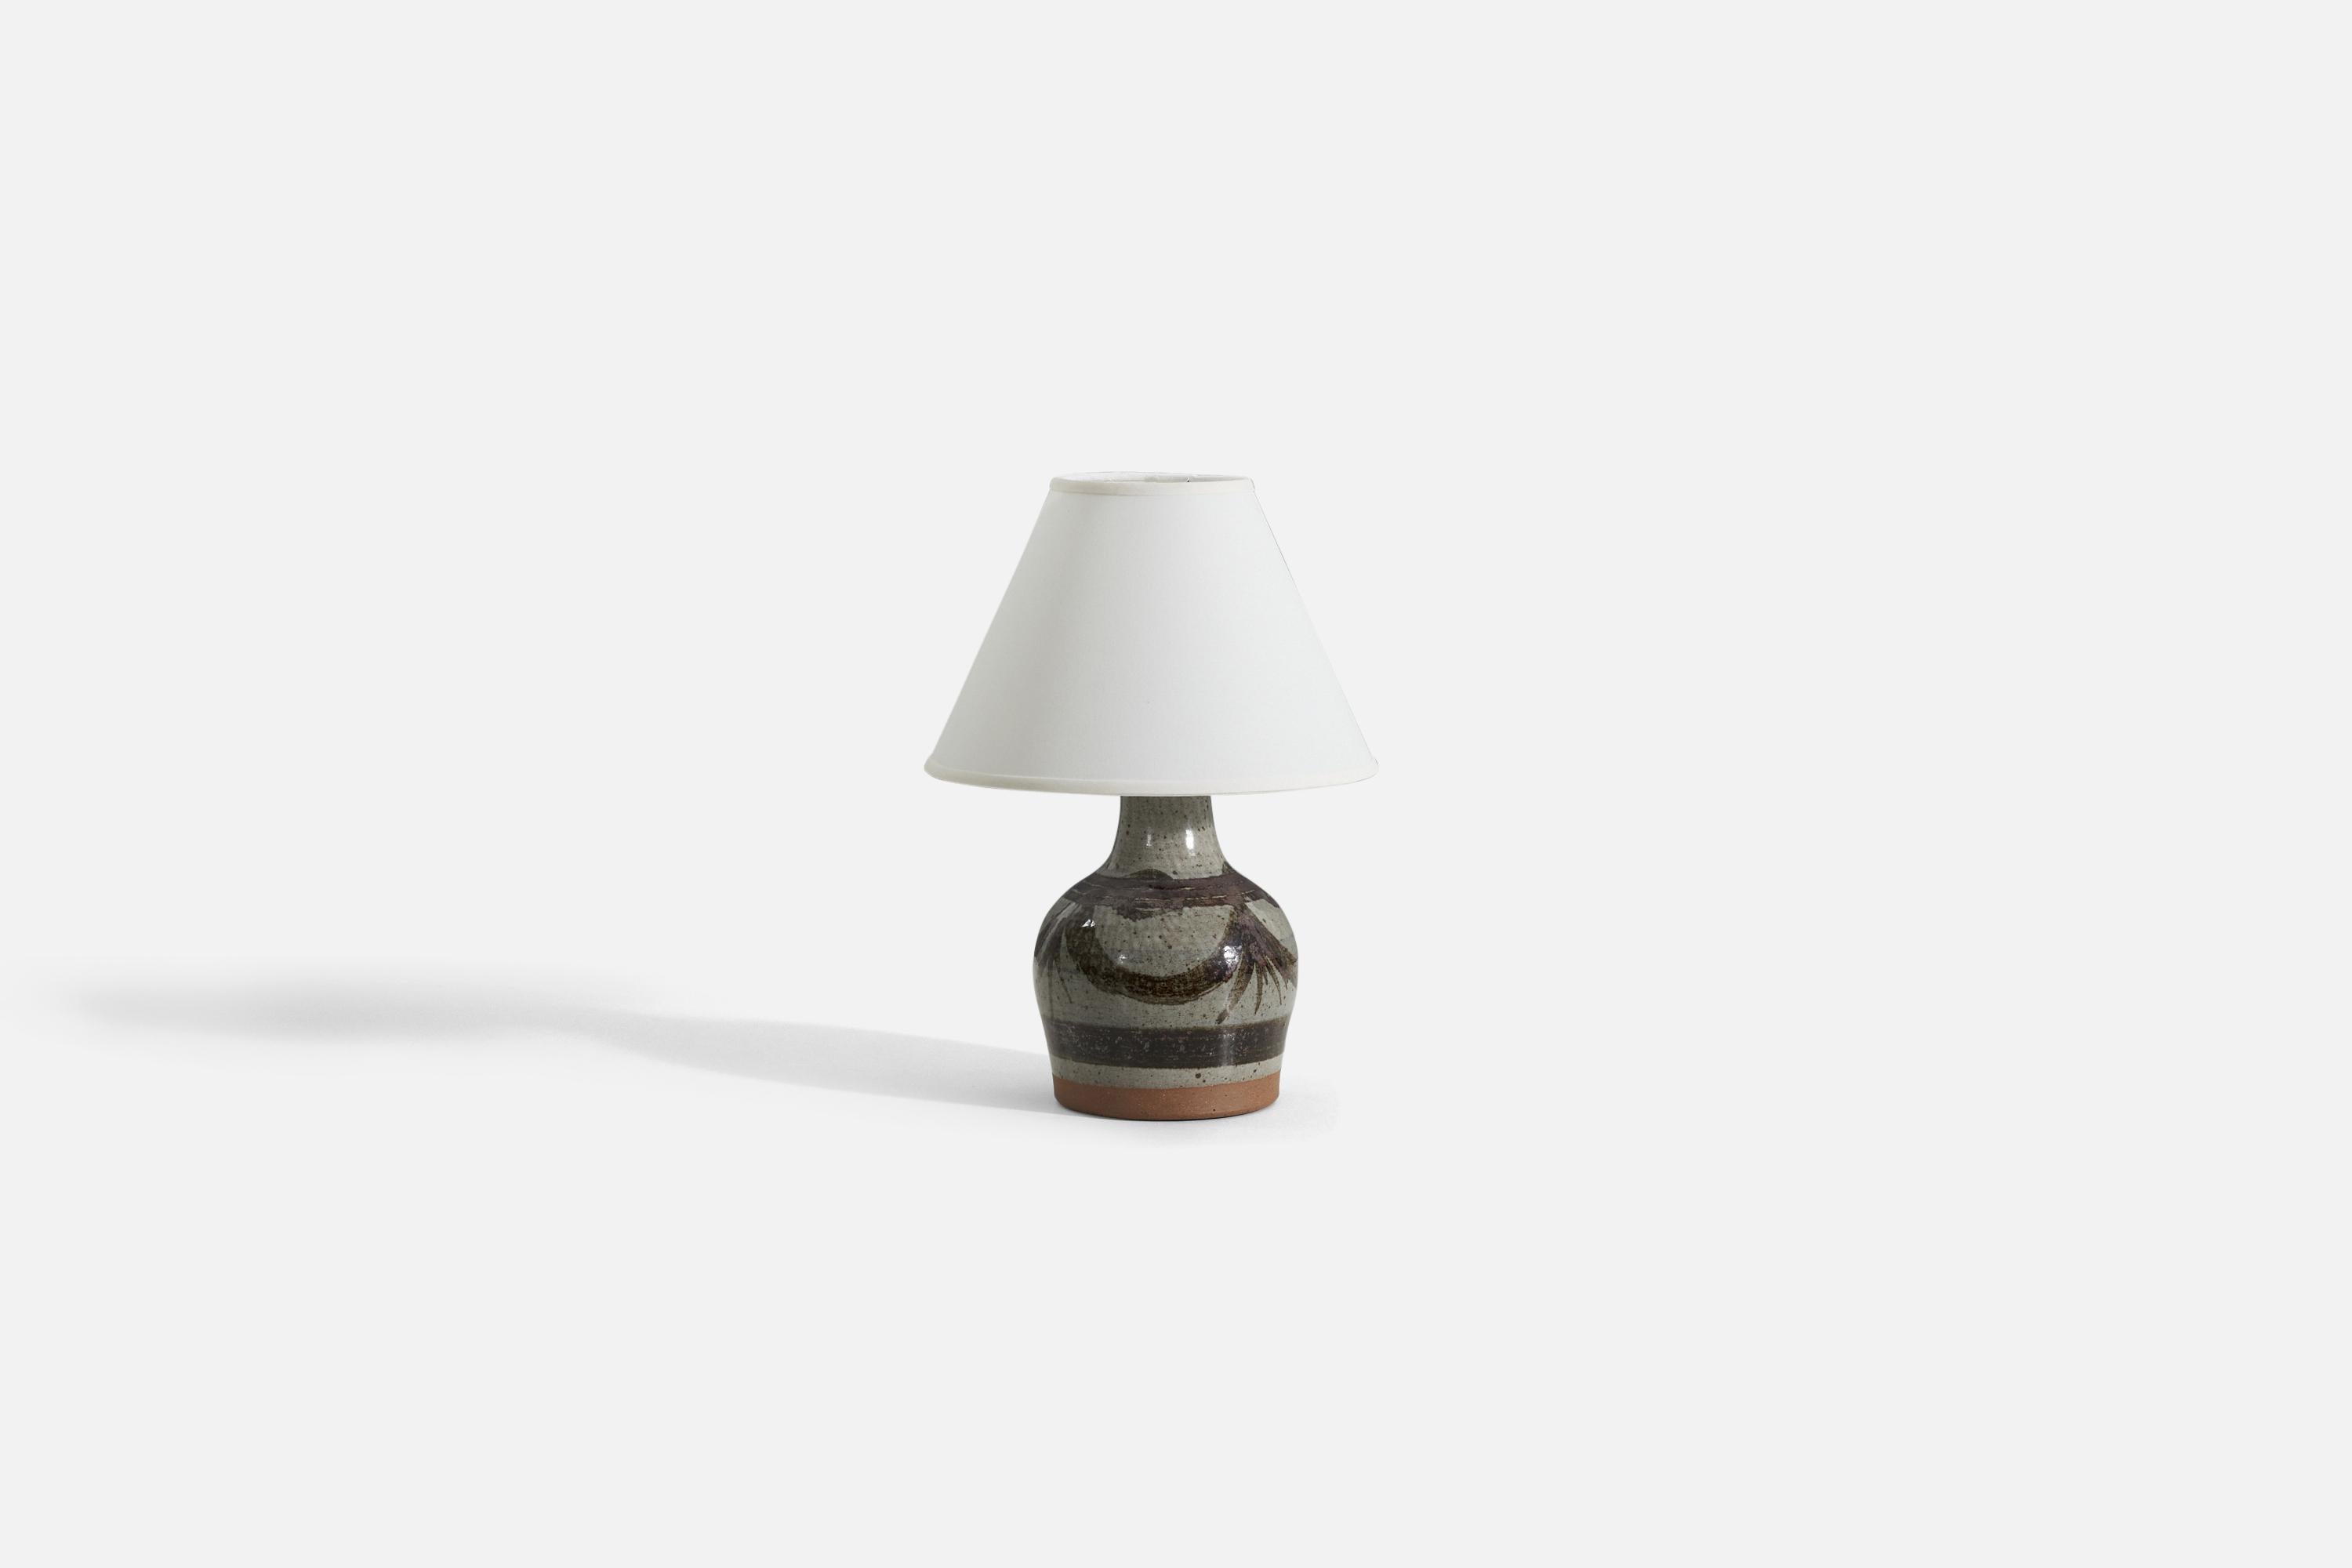 Tischlampe aus grauem und braunem glasiertem Steingut, entworfen und hergestellt von Helle Allpass, Dänemark, 1960er Jahre.

Verkauft ohne Lampenschirm.
Die angegebenen Maße beziehen sich auf die Lampe selbst. 
Maße des Schirms: 5 x 12,25 x 8,75